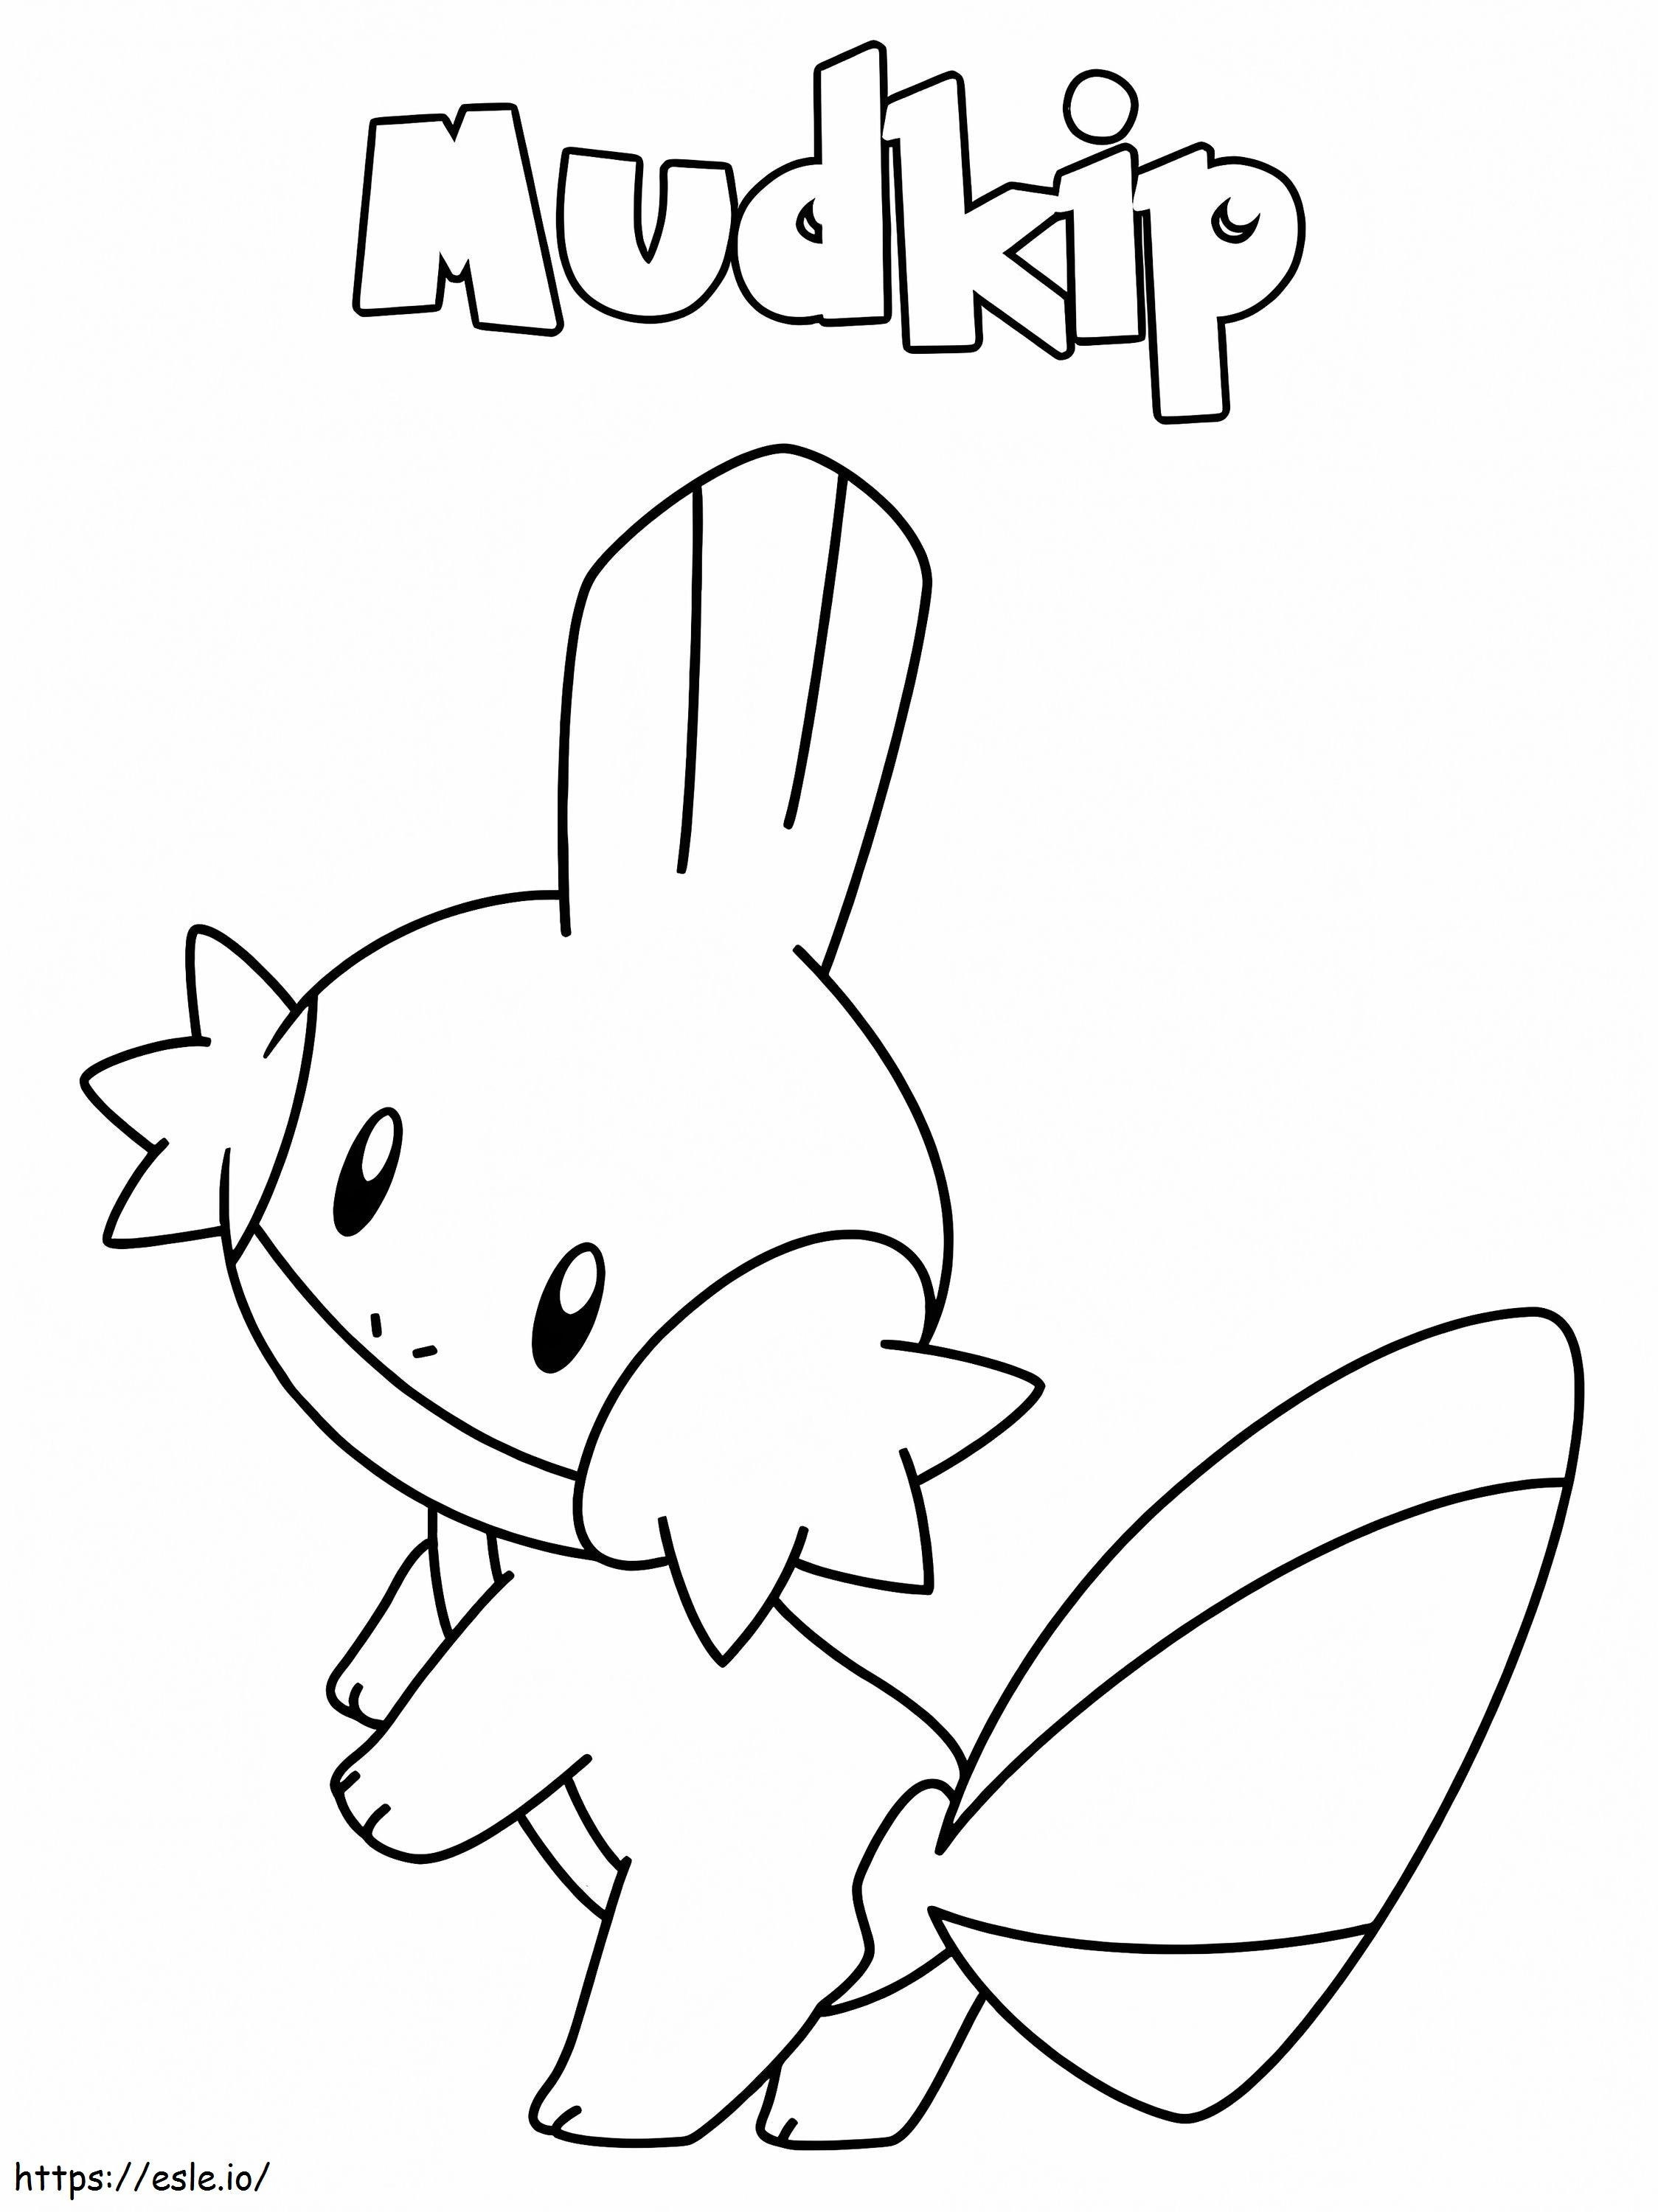 Mudkip Pokemon'u Yazdır boyama